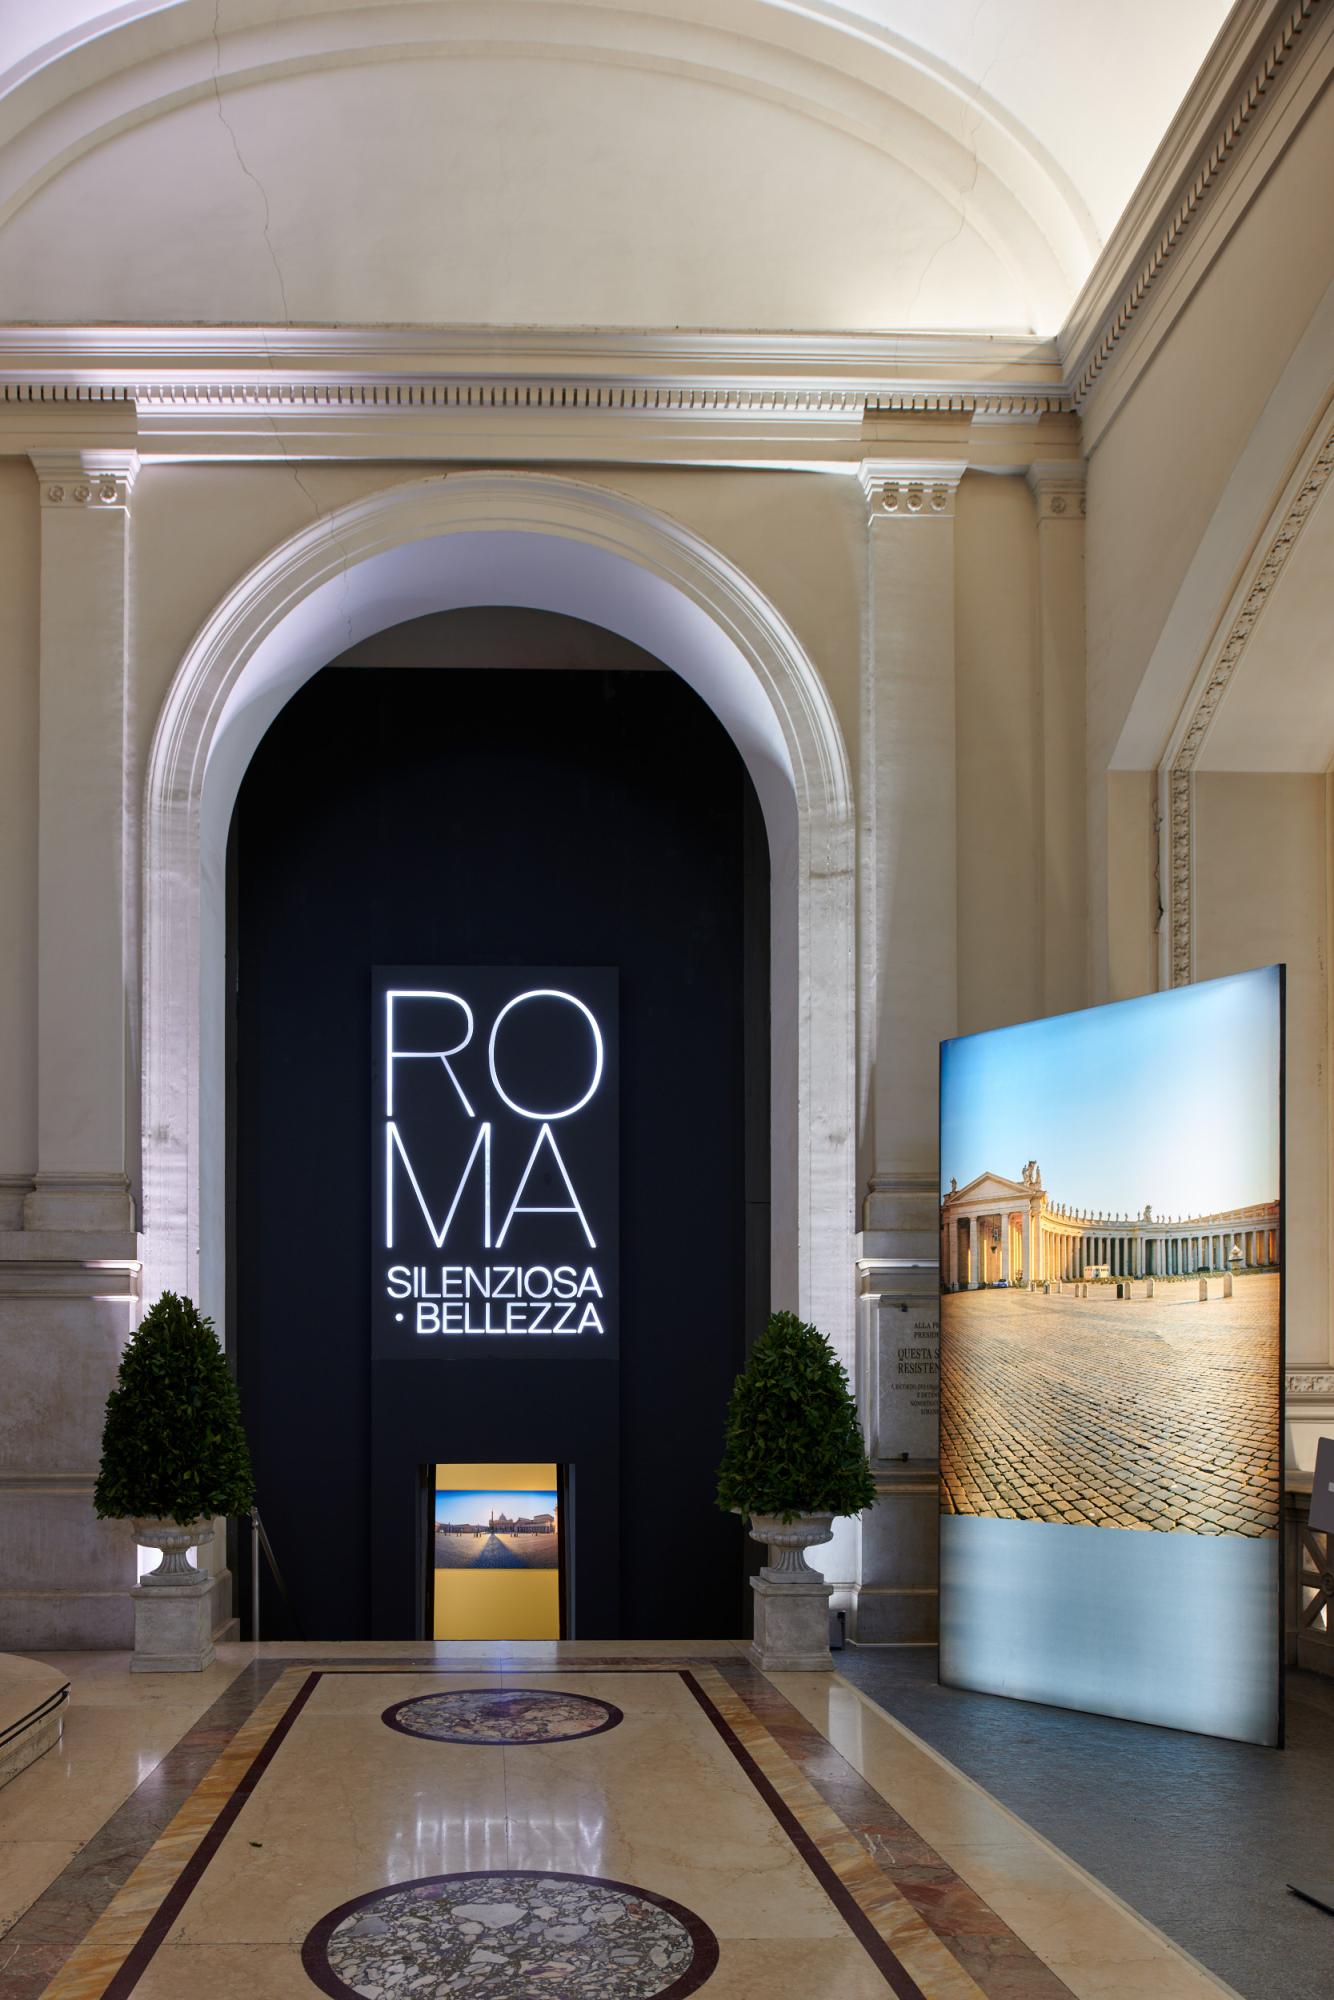 Inaugurazione della mostra ROMA SILENZIOSA BELLEZZA: 28.481 visitatori al Vittoriano nei primi tre giorni di apertura